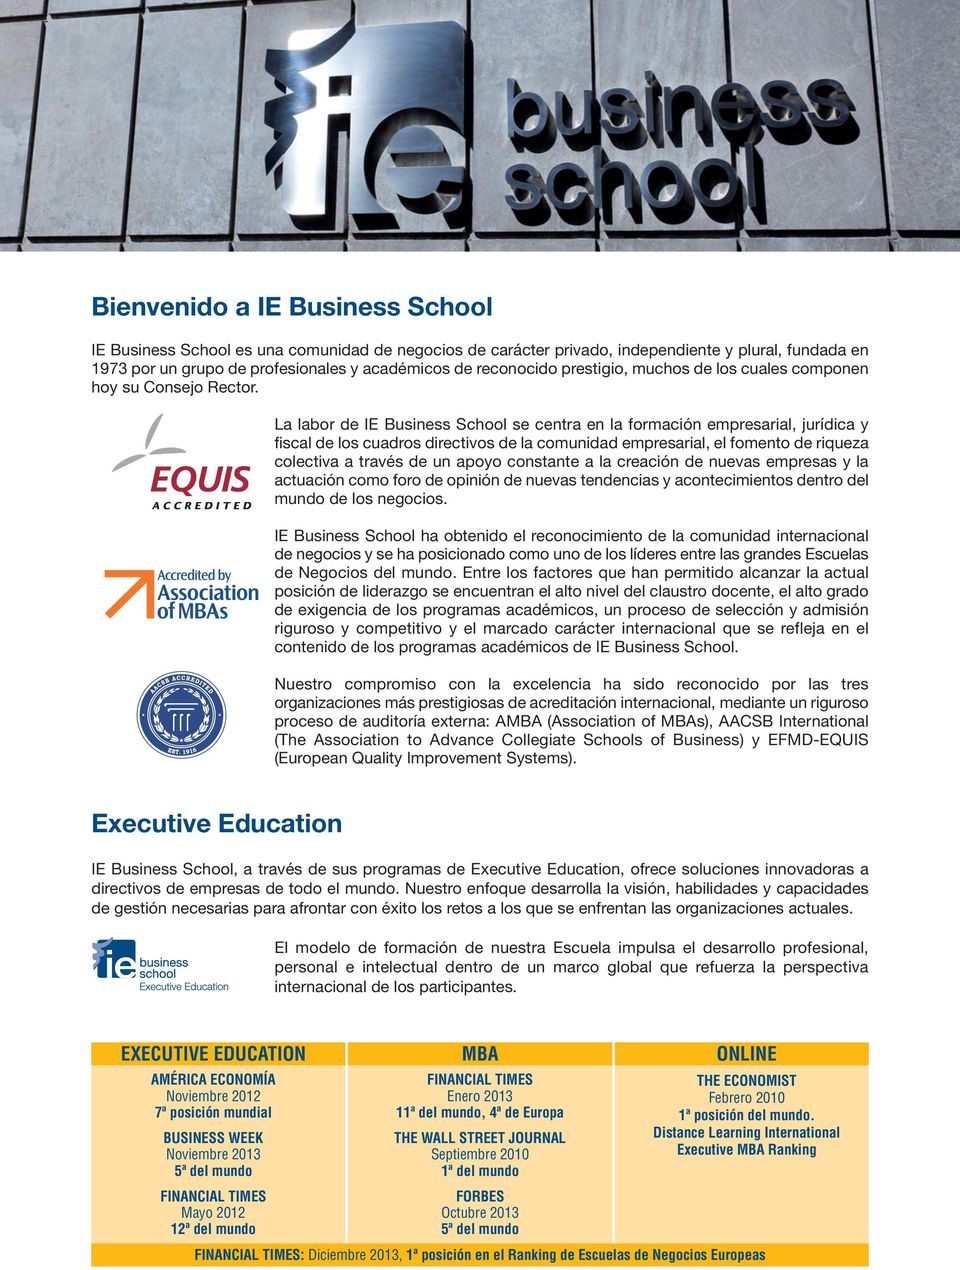 La labor de IE Business School se centra en la formación empresarial, jurídica y fiscal de los cuadros directivos de la comunidad empresarial, el fomento de riqueza colectiva a través de un apoyo